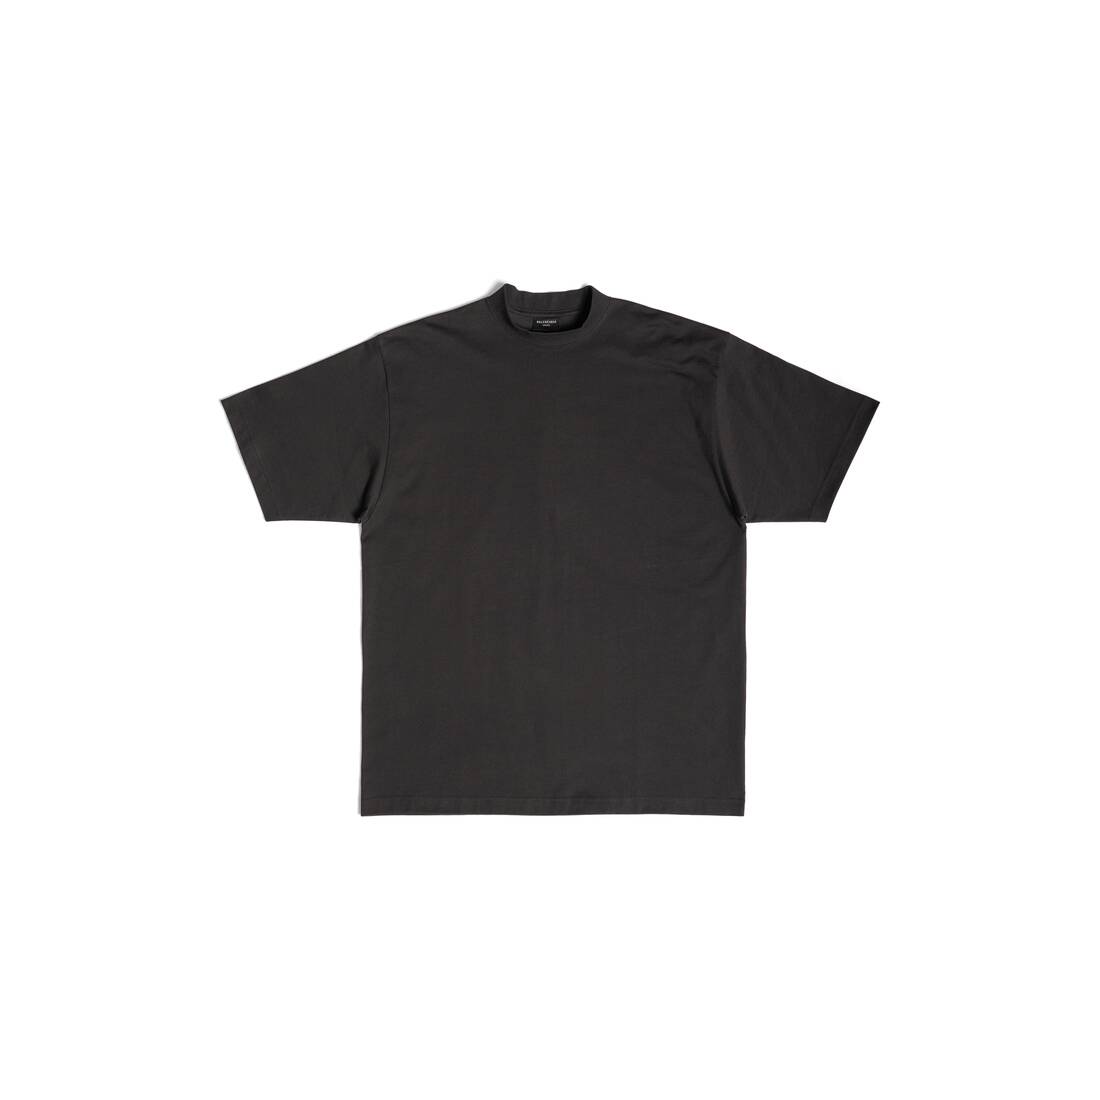 Bb Paris Strass T-shirt Medium Fit in Black Faded